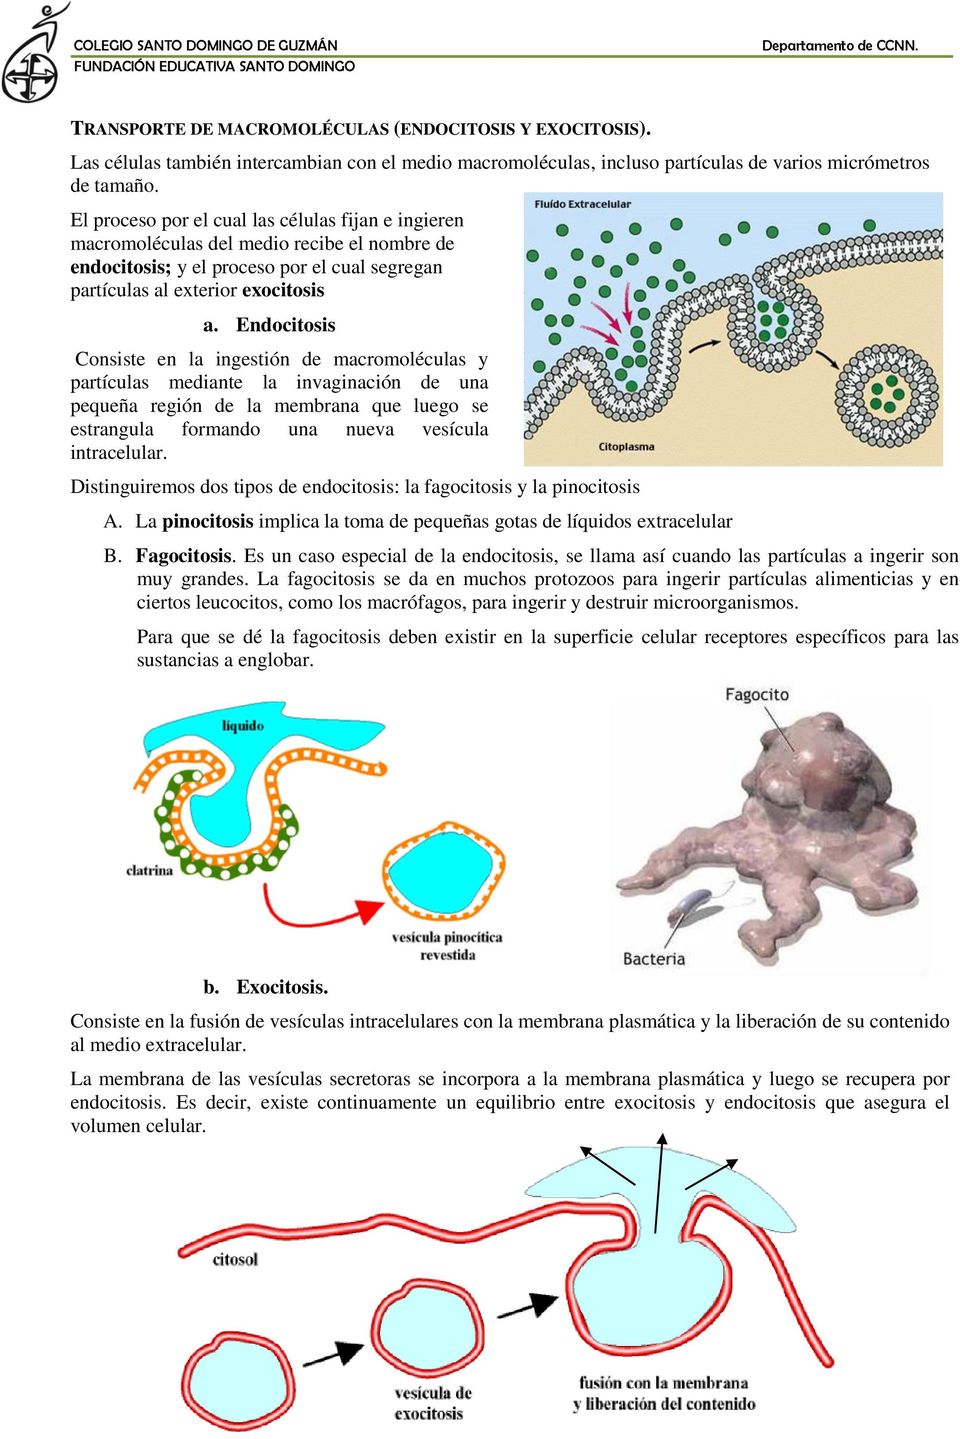 Endocitosis Consiste en la ingestión de macromoléculas y partículas mediante la invaginación de una pequeña región de la membrana que luego se estrangula formando una nueva vesícula intracelular.